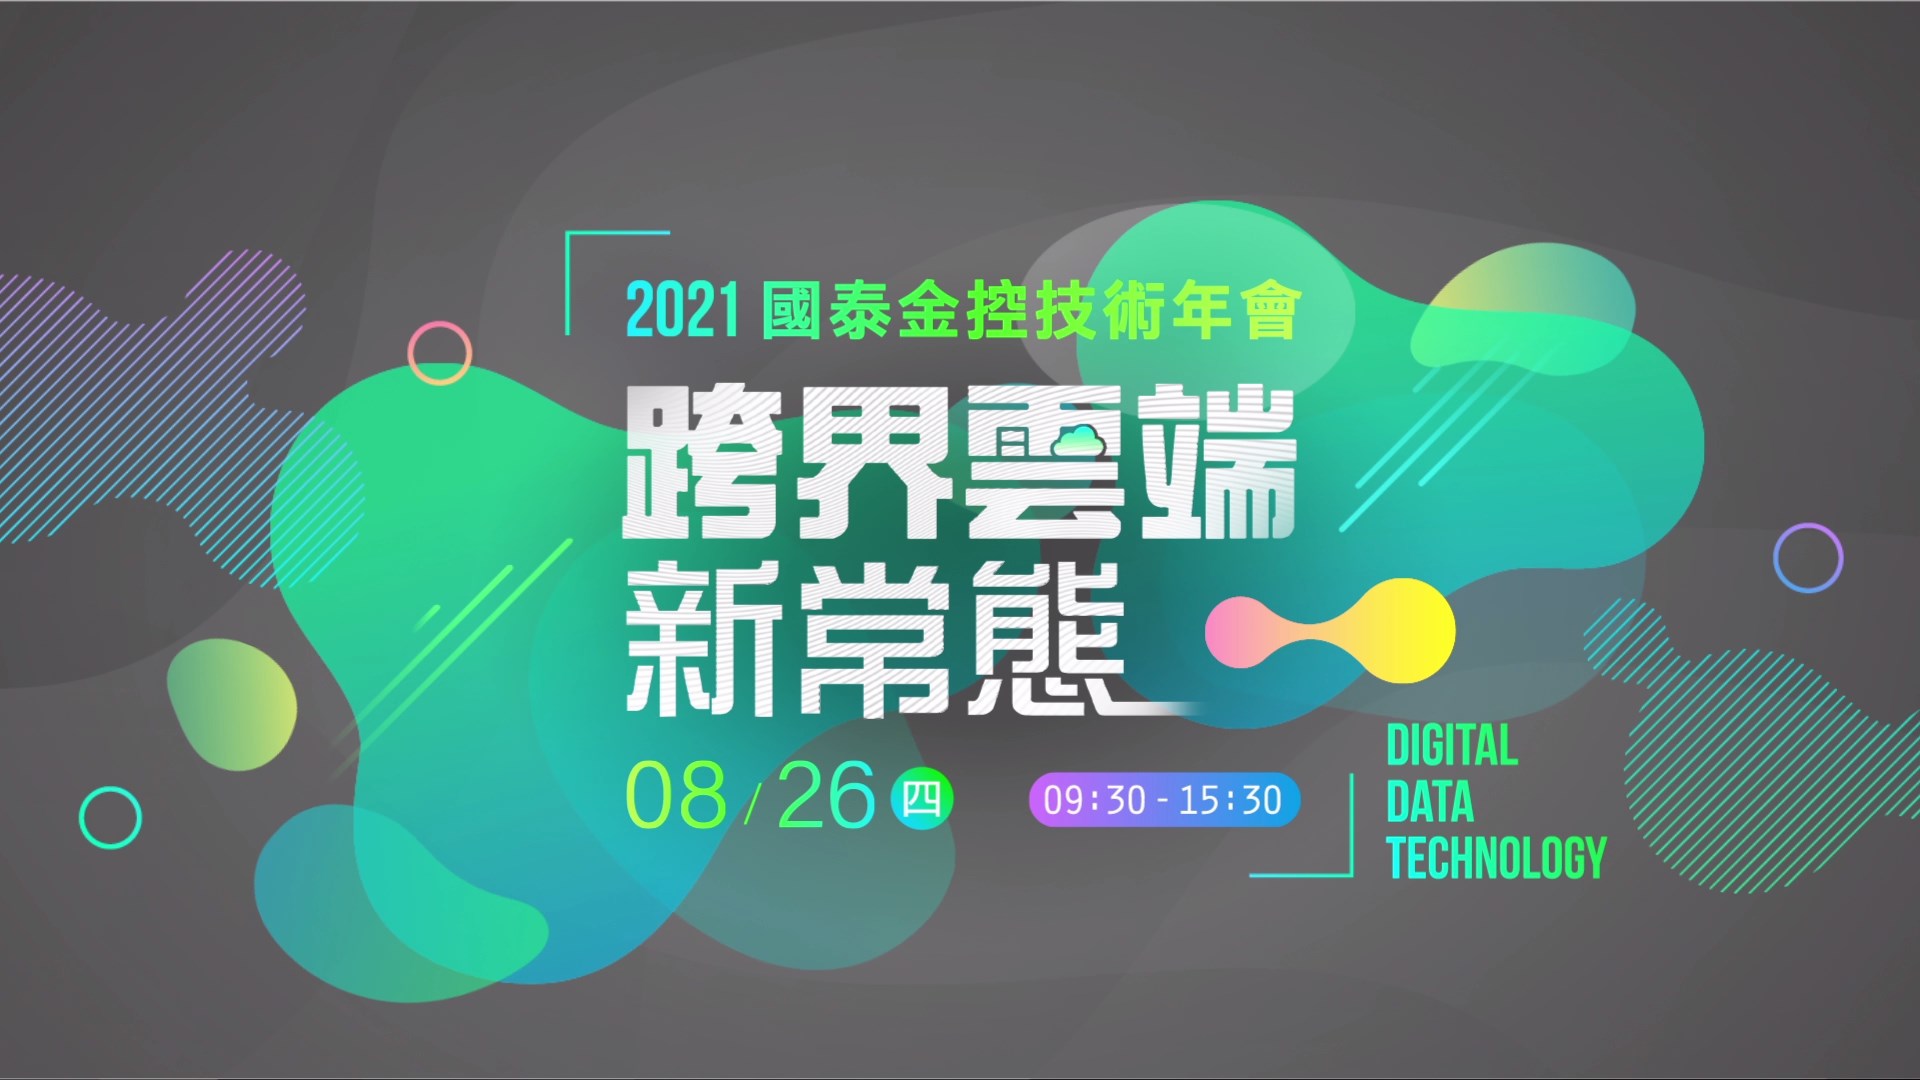 国泰金控技术年会-2021跨界云端新常态(活动宣传影片)